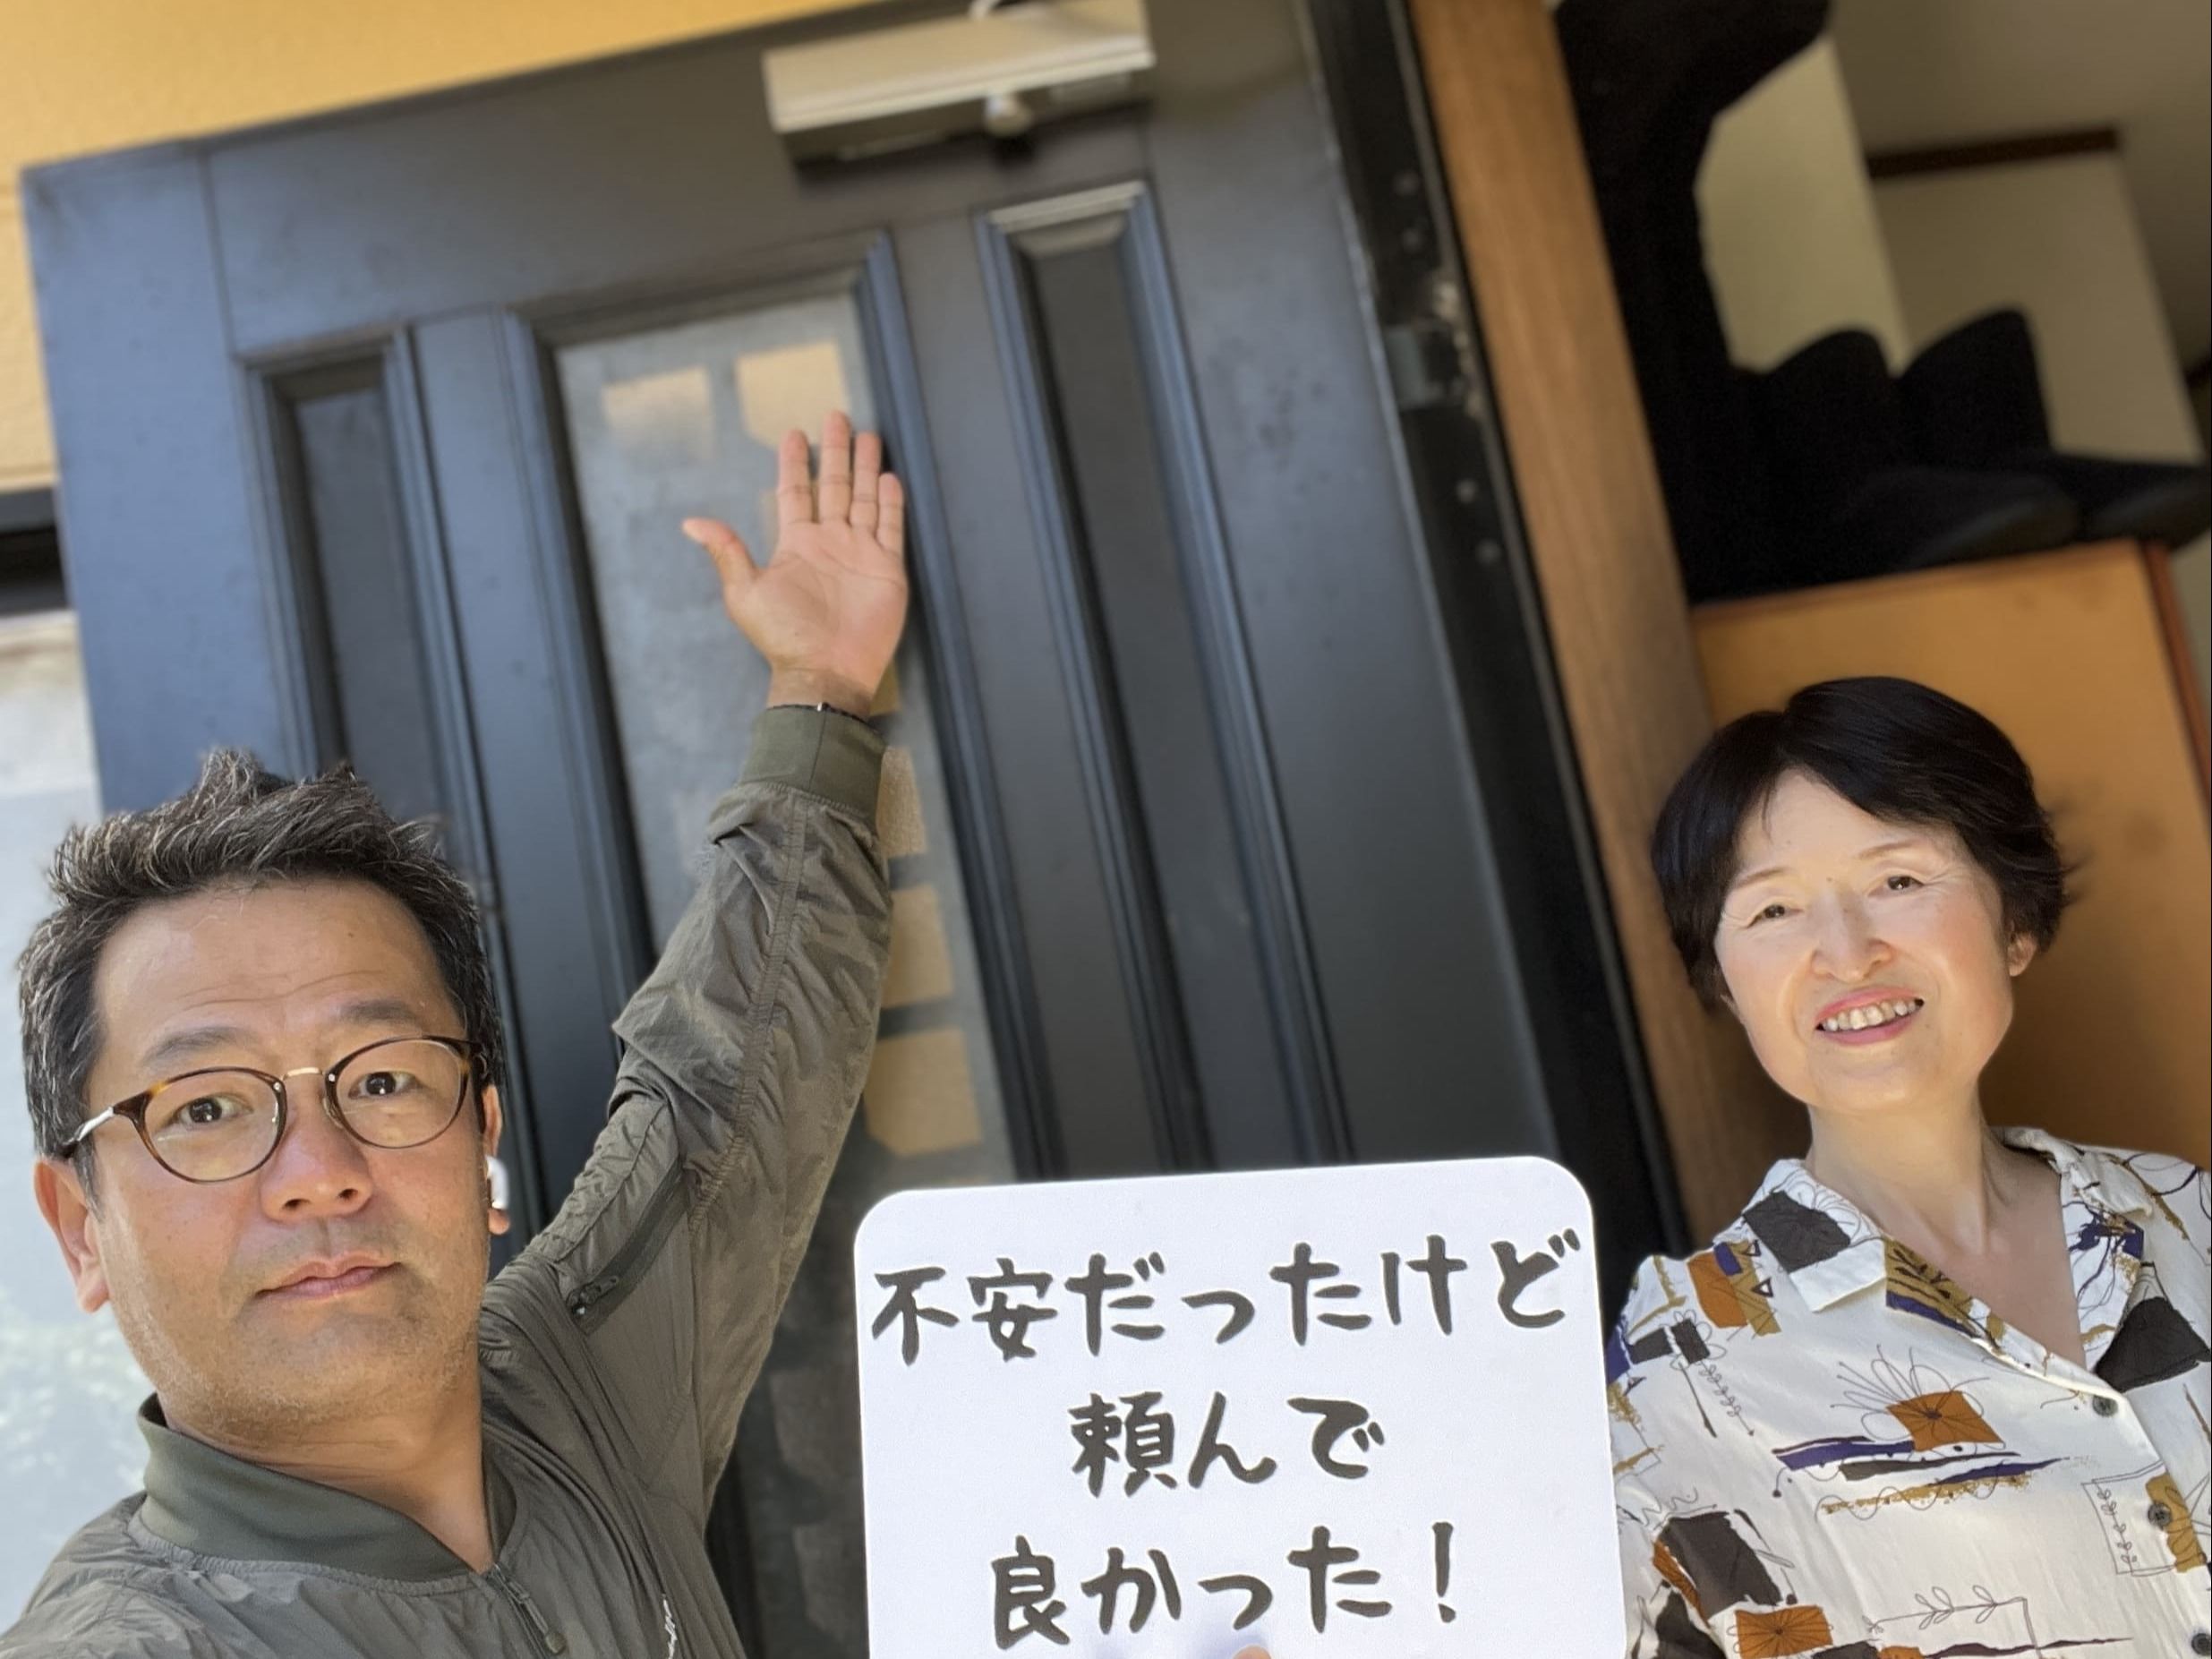 【武蔵村山市地域】カギとドア修理コバヤシの店内・外観画像3